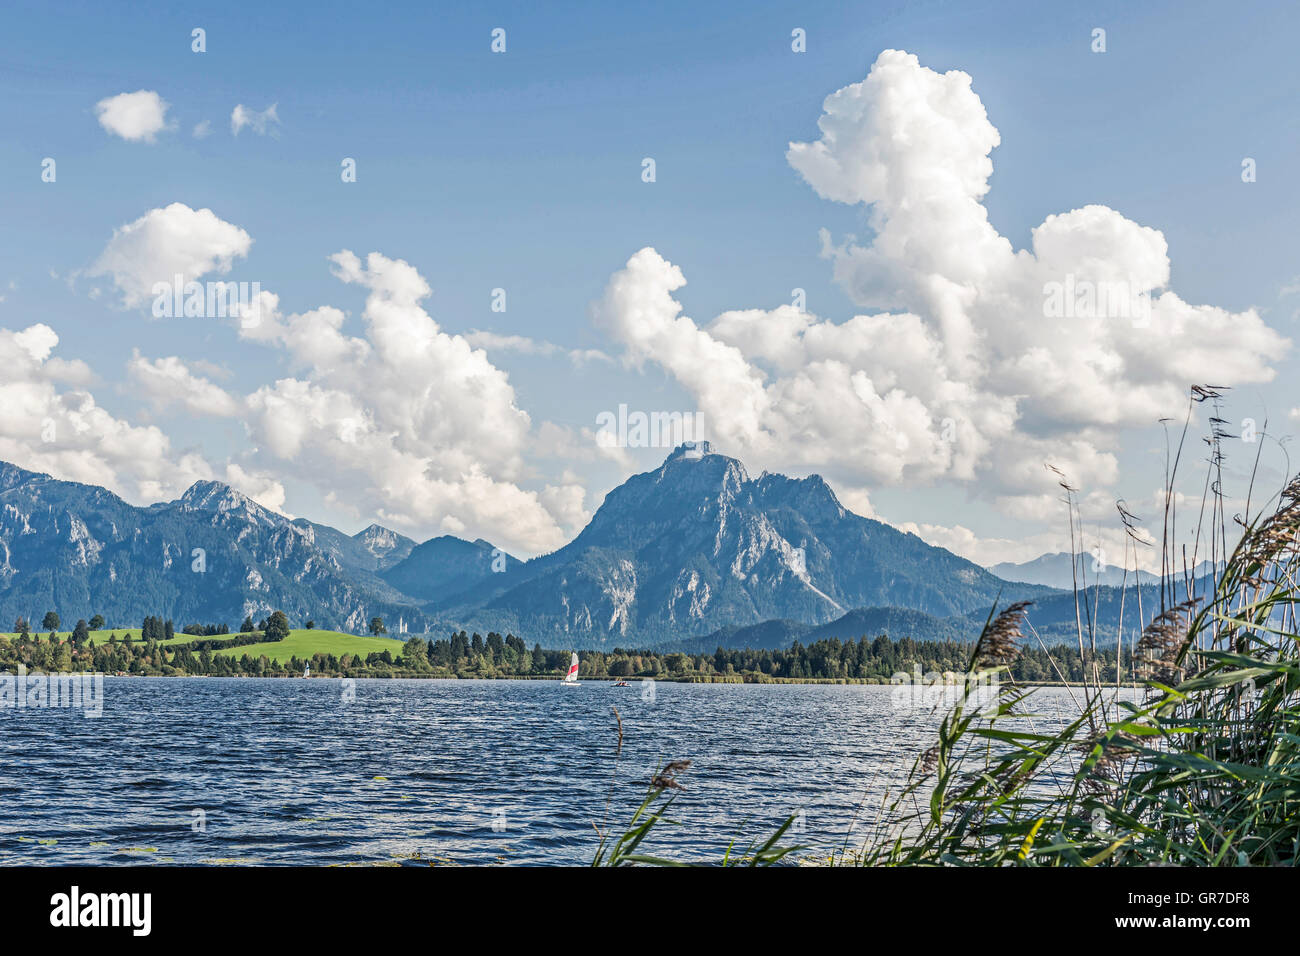 Le cadre idyllique et l'Hopfensee paysage à couper le souffle de la montagne de Tegel et Säuling Banque D'Images